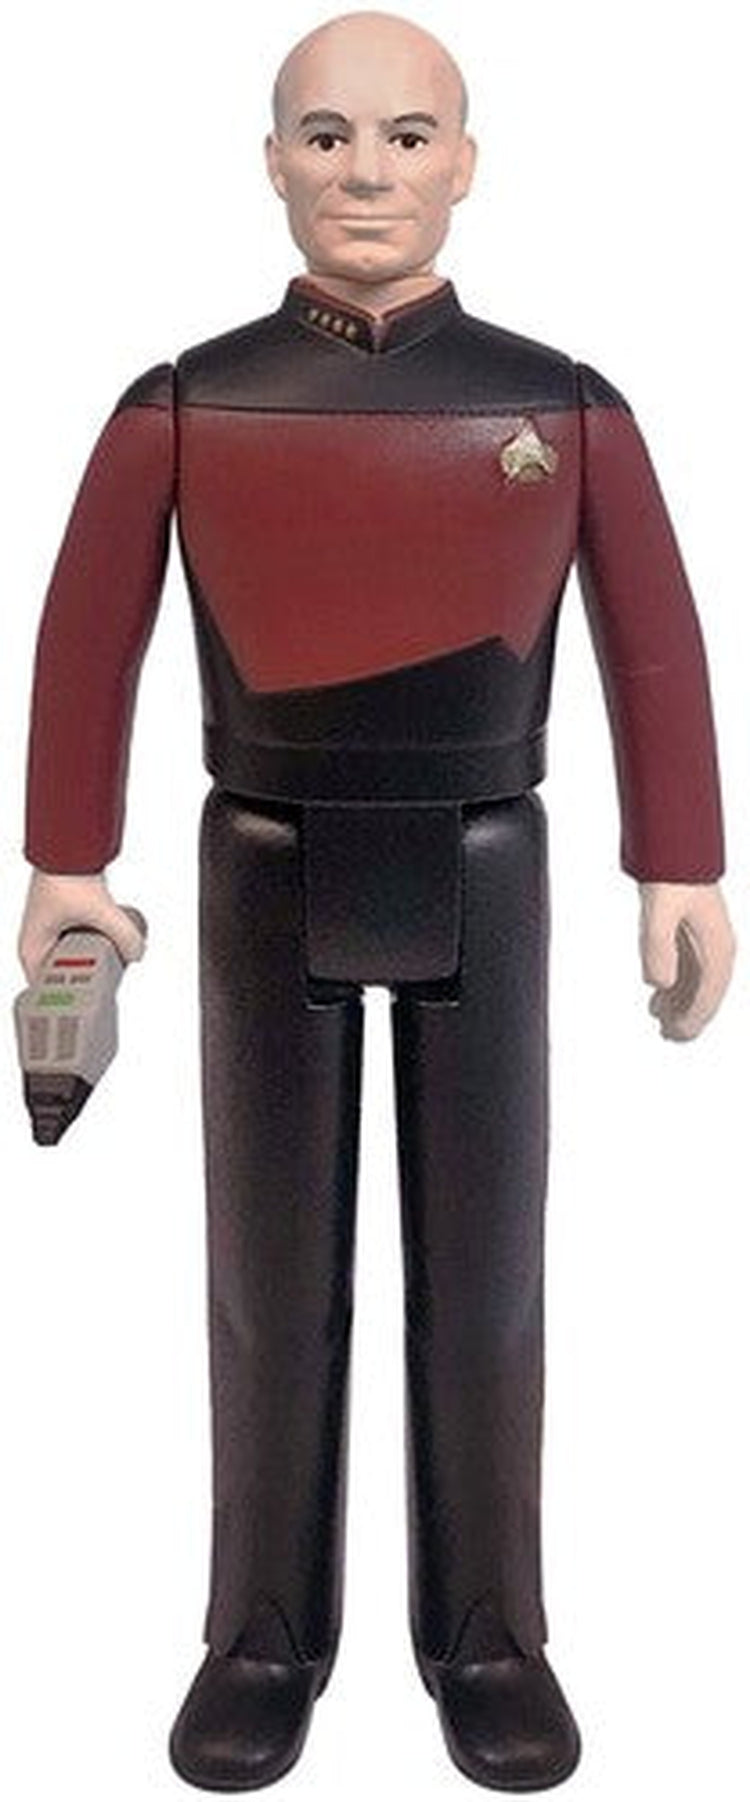 Super7 - Star Trek: The Next Generation ReAction Figure Wave 1 - Captain Picard